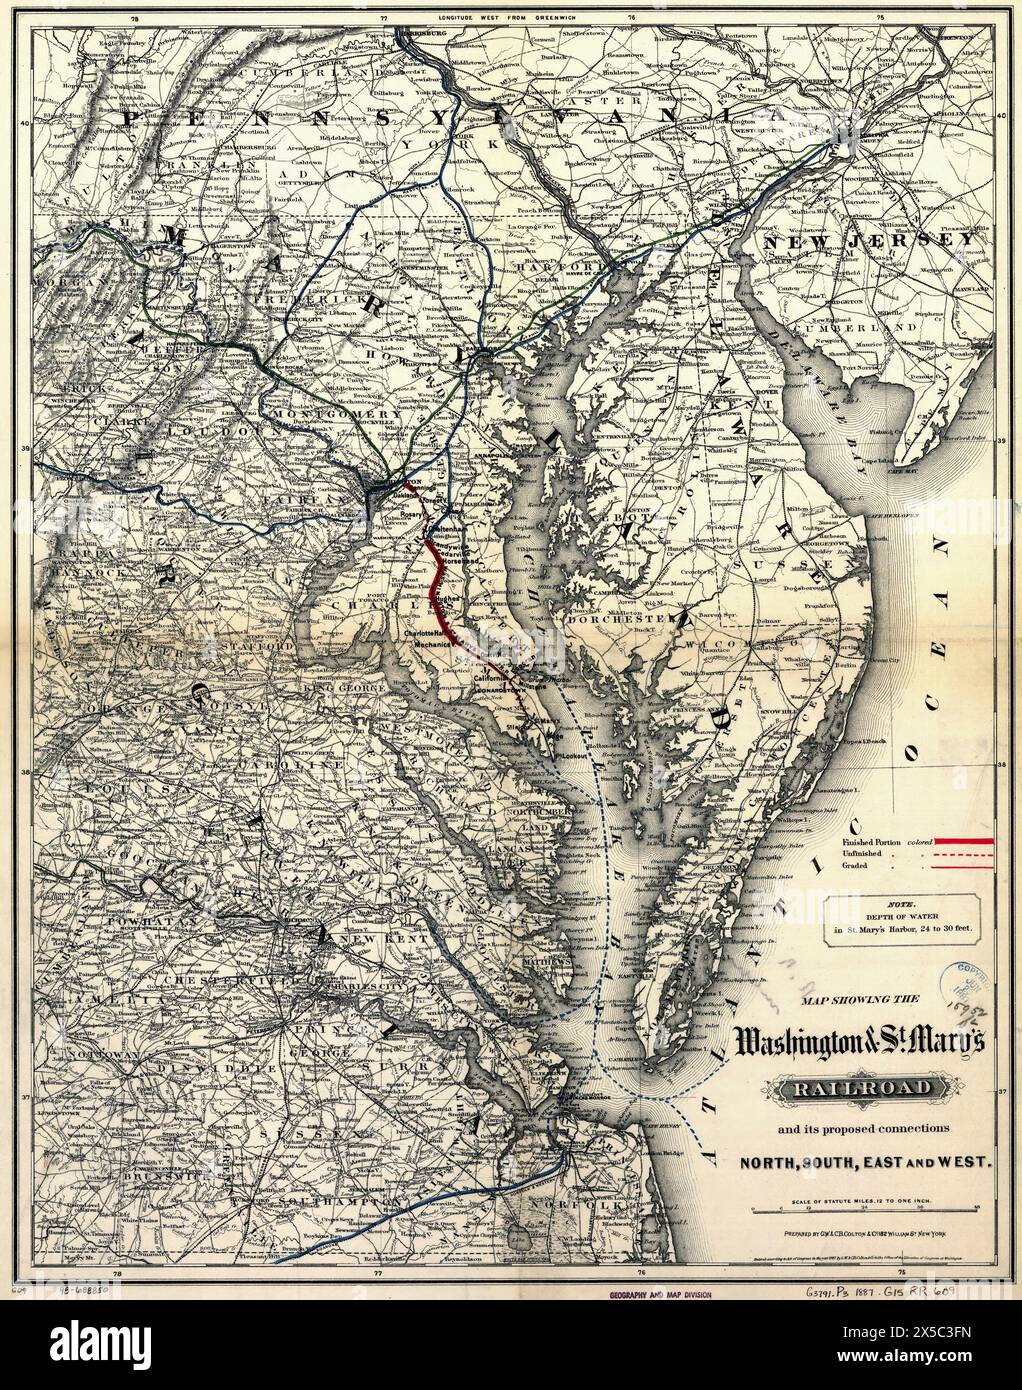 Karte mit der Washington & St. Mary's Railroad und ihren geplanten Verbindungen nach Norden, Süden, Osten und Westen. staaten des Mittleren Atlantiks, die durch Hachuren, Entwässerung, Grafschaften, Städte, Straßen, und Eisenbahnen mit den Hauptlinien betont, 1887 Stockfoto